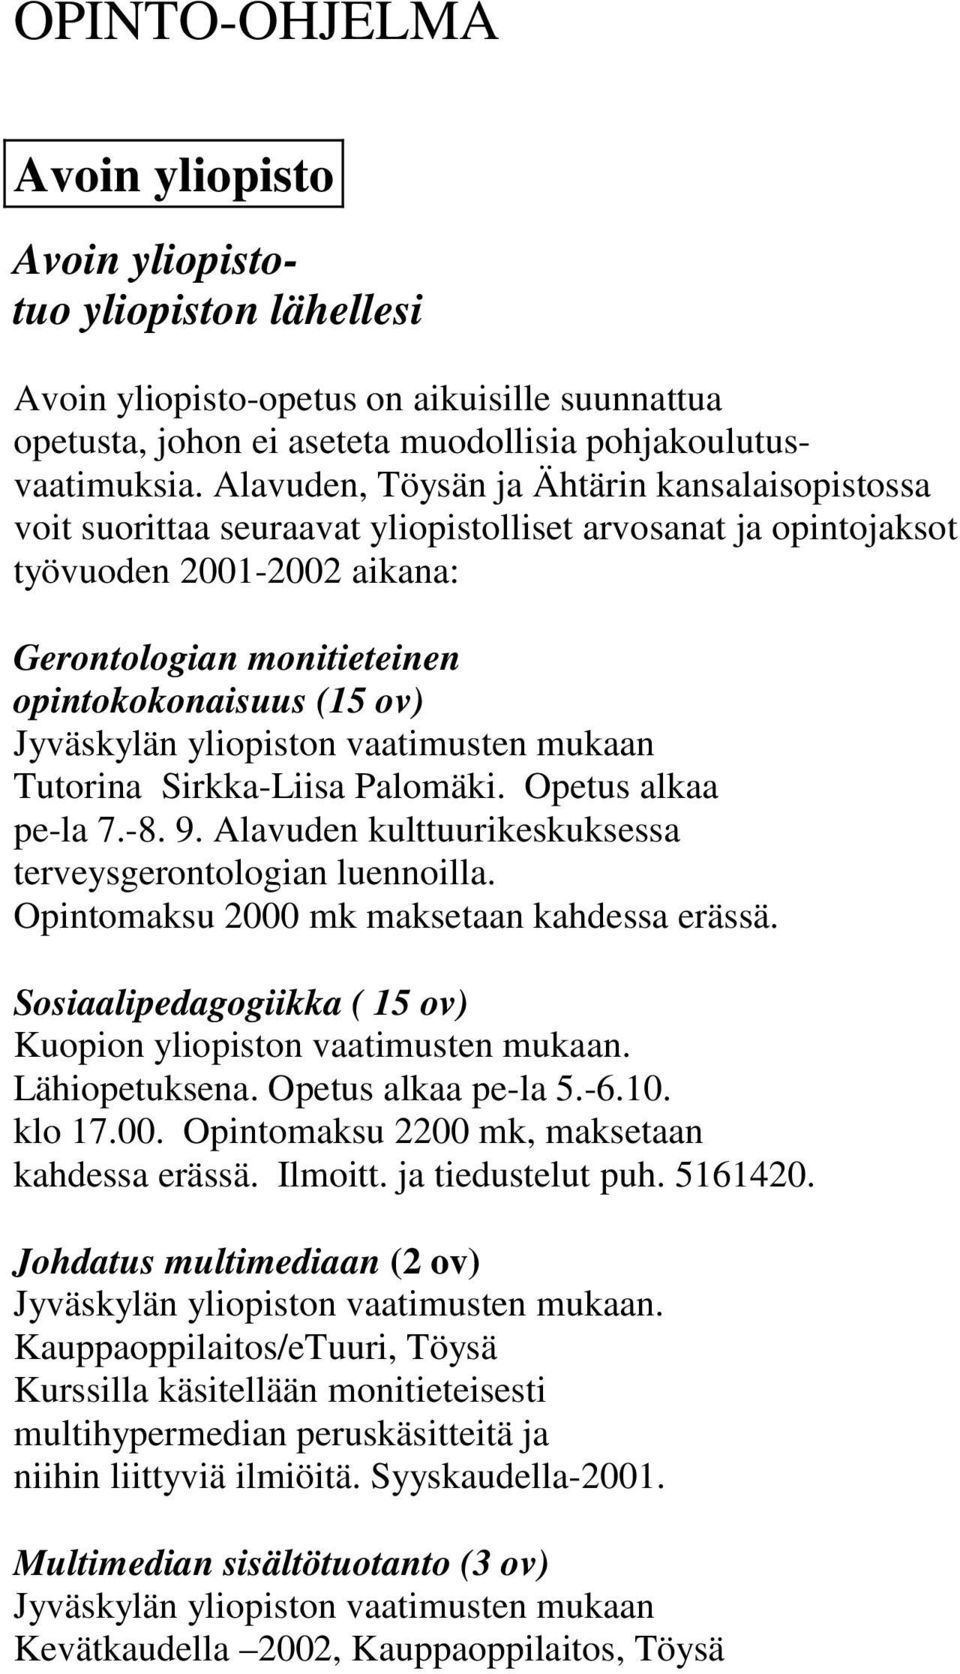 Jyväskylän yliopiston vaatimusten mukaan Tutorina Sirkka-Liisa Palomäki. Opetus alkaa pe-la 7.-8. 9. Alavuden kulttuurikeskuksessa terveysgerontologian luennoilla.